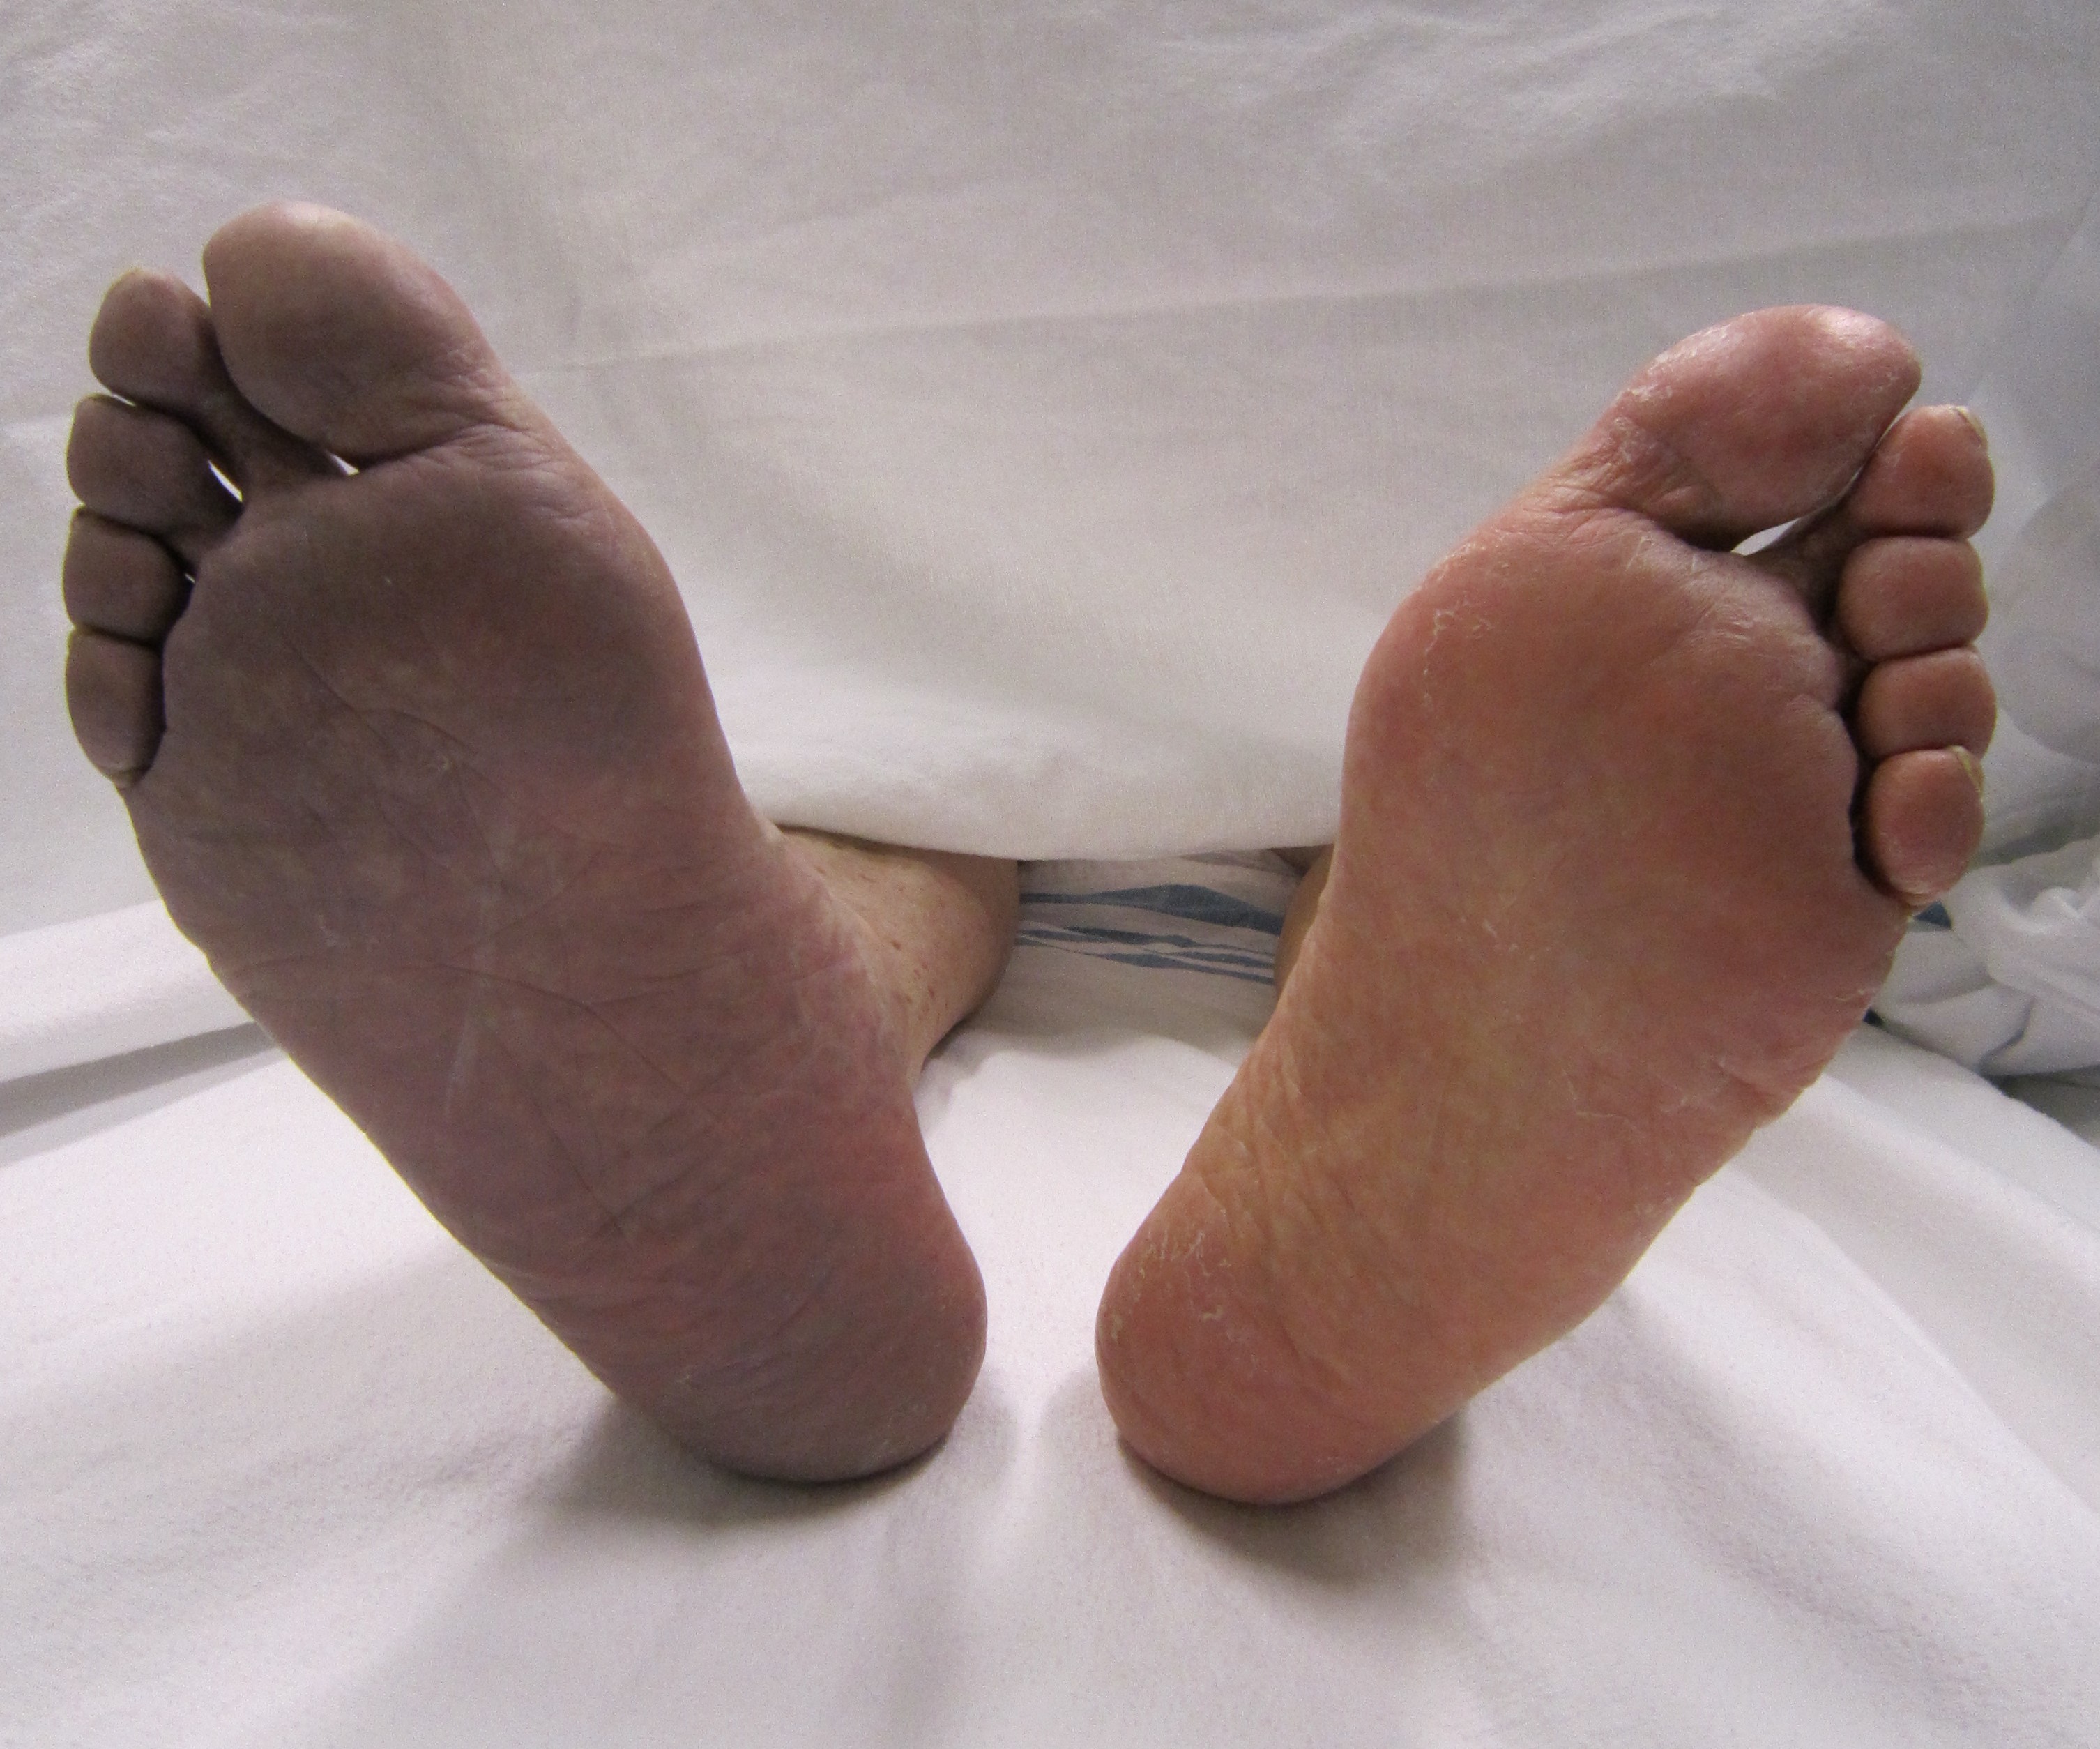 Spremenjena barva noge je alarmni znak, da je prekrvavitev motena, potrebno je takoj poiskati zdravniški nasvet.